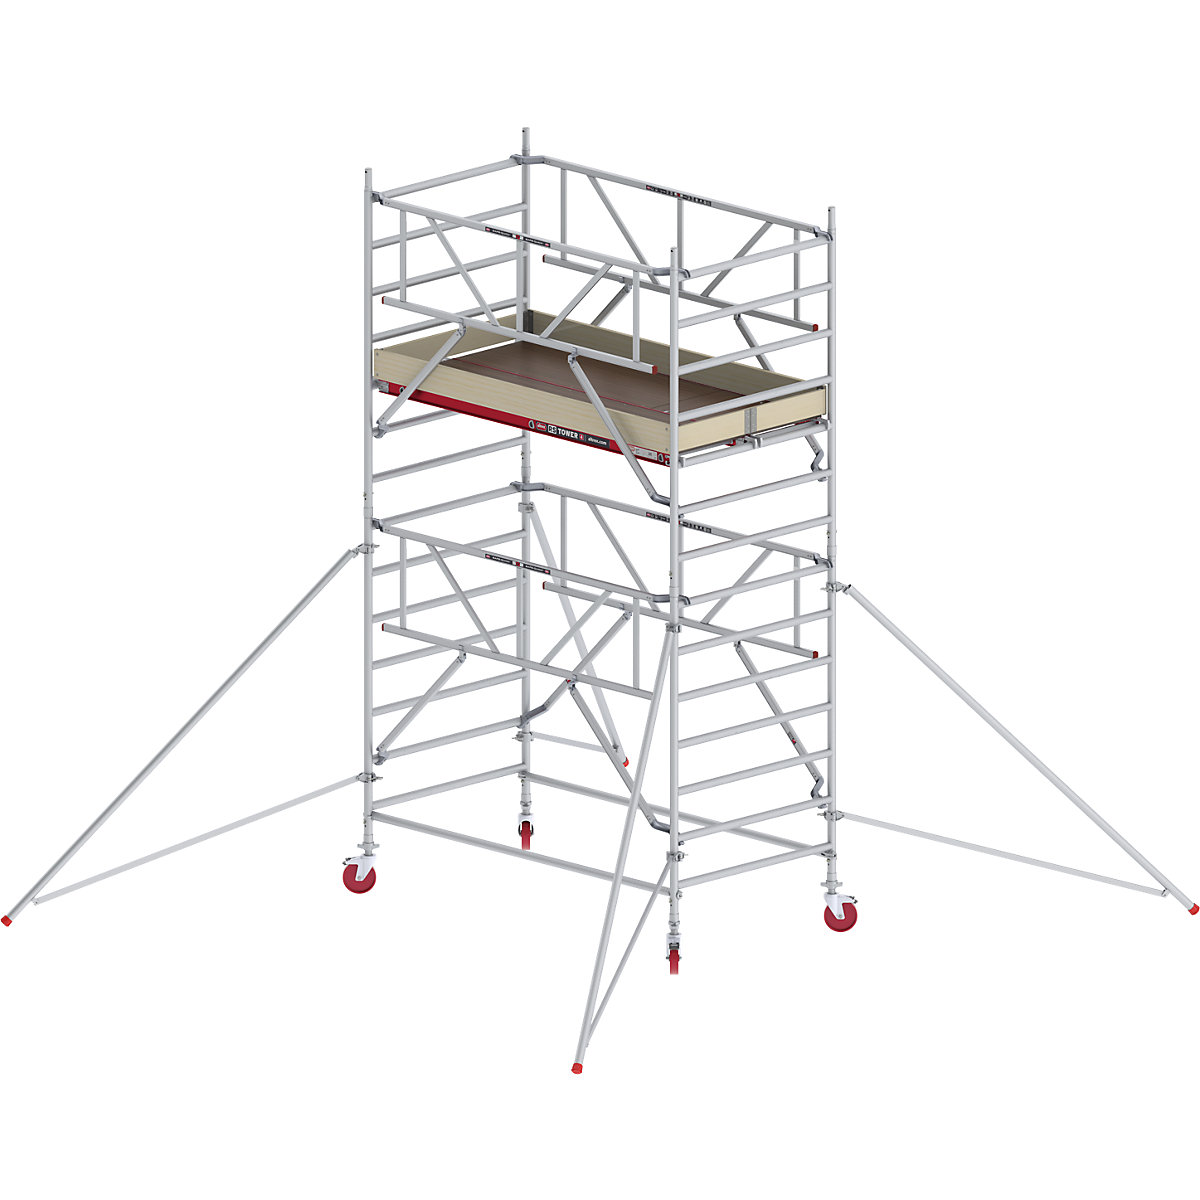 Trabattello mobile RS TOWER 42 largo con Safe-Quick® – Altrex, piattaforma in legno, lunghezza 1,85 m, altezza di lavoro 5,20 m-1